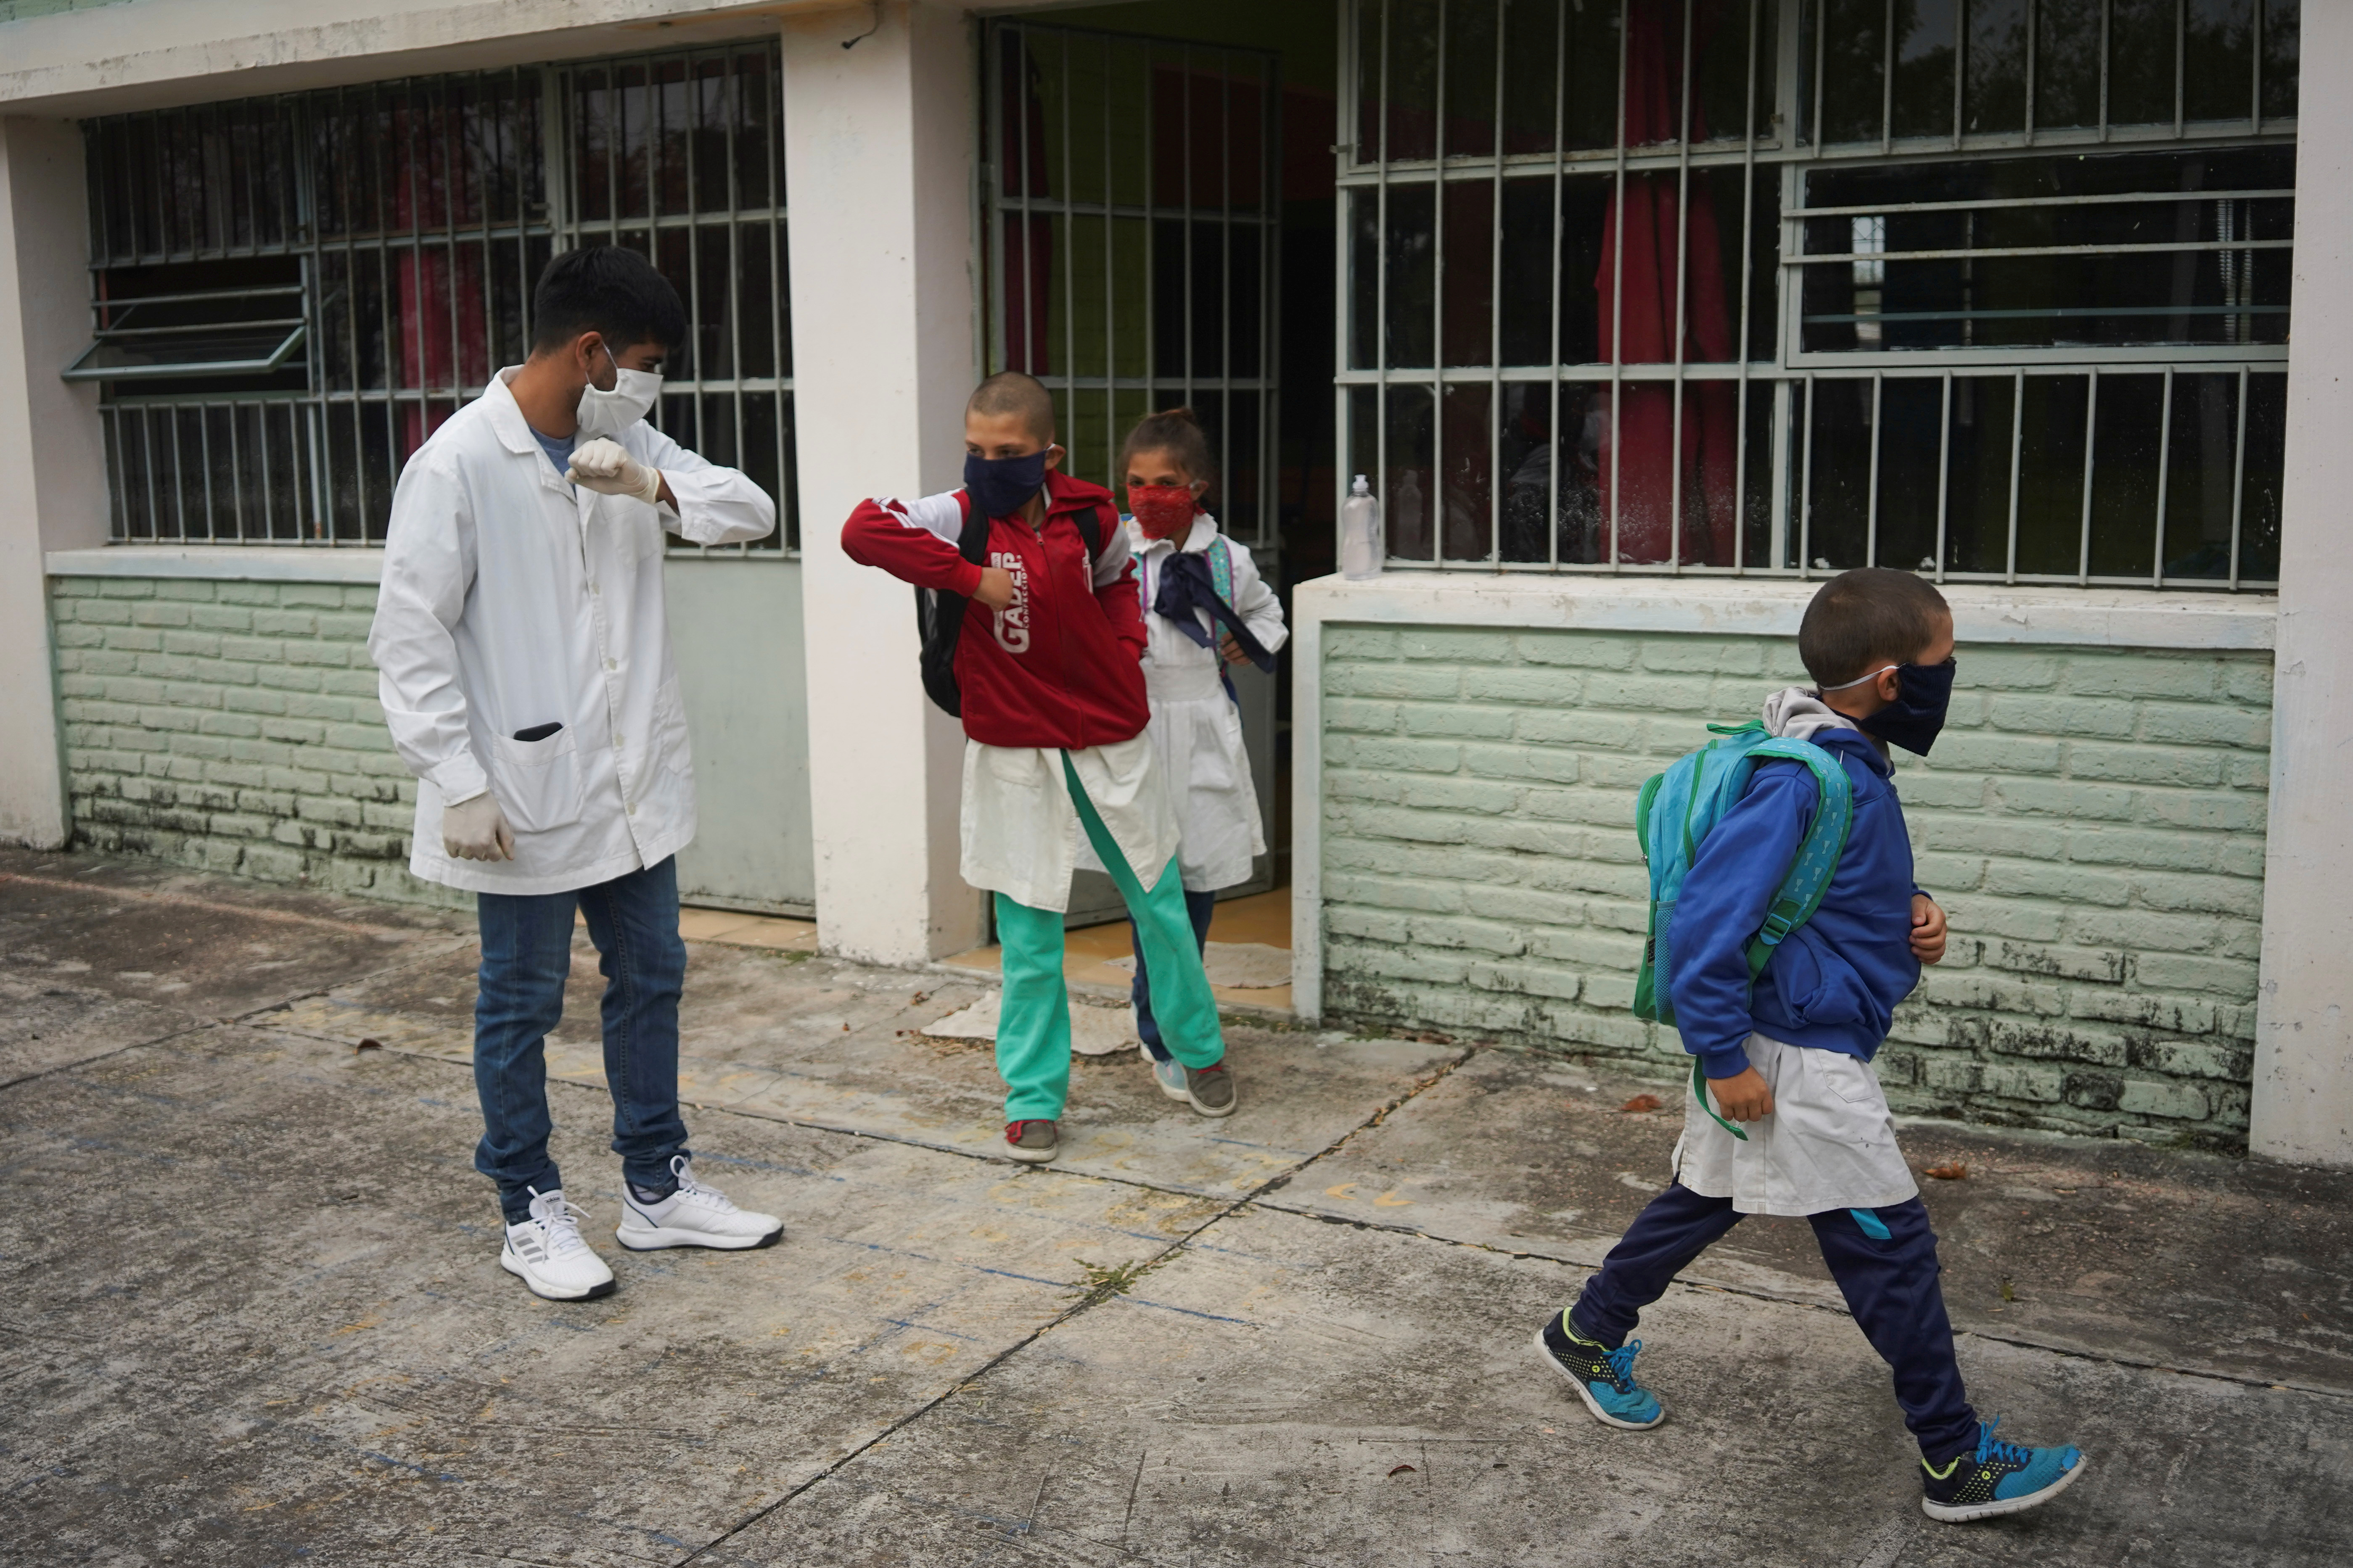 El maestro saluda a los estudiantes con el codo (REUTERS/Mariana Greif)